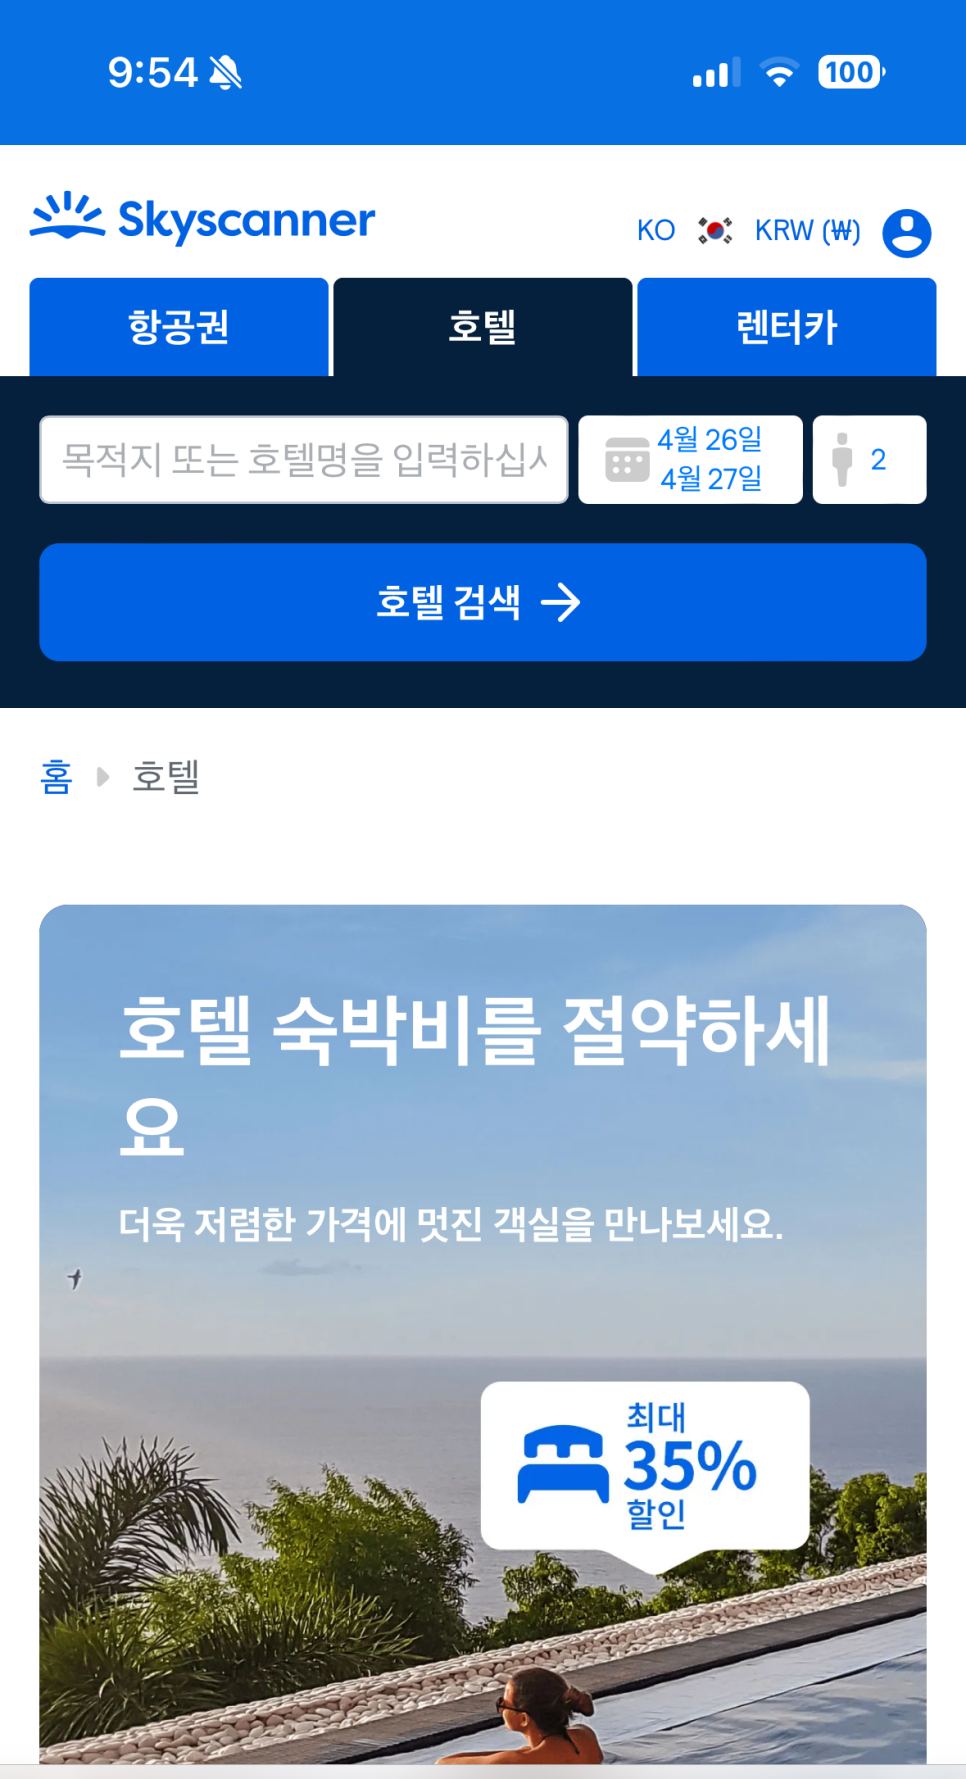 마카오 여행 매력 마카오 호텔  항공권 추천 BEST